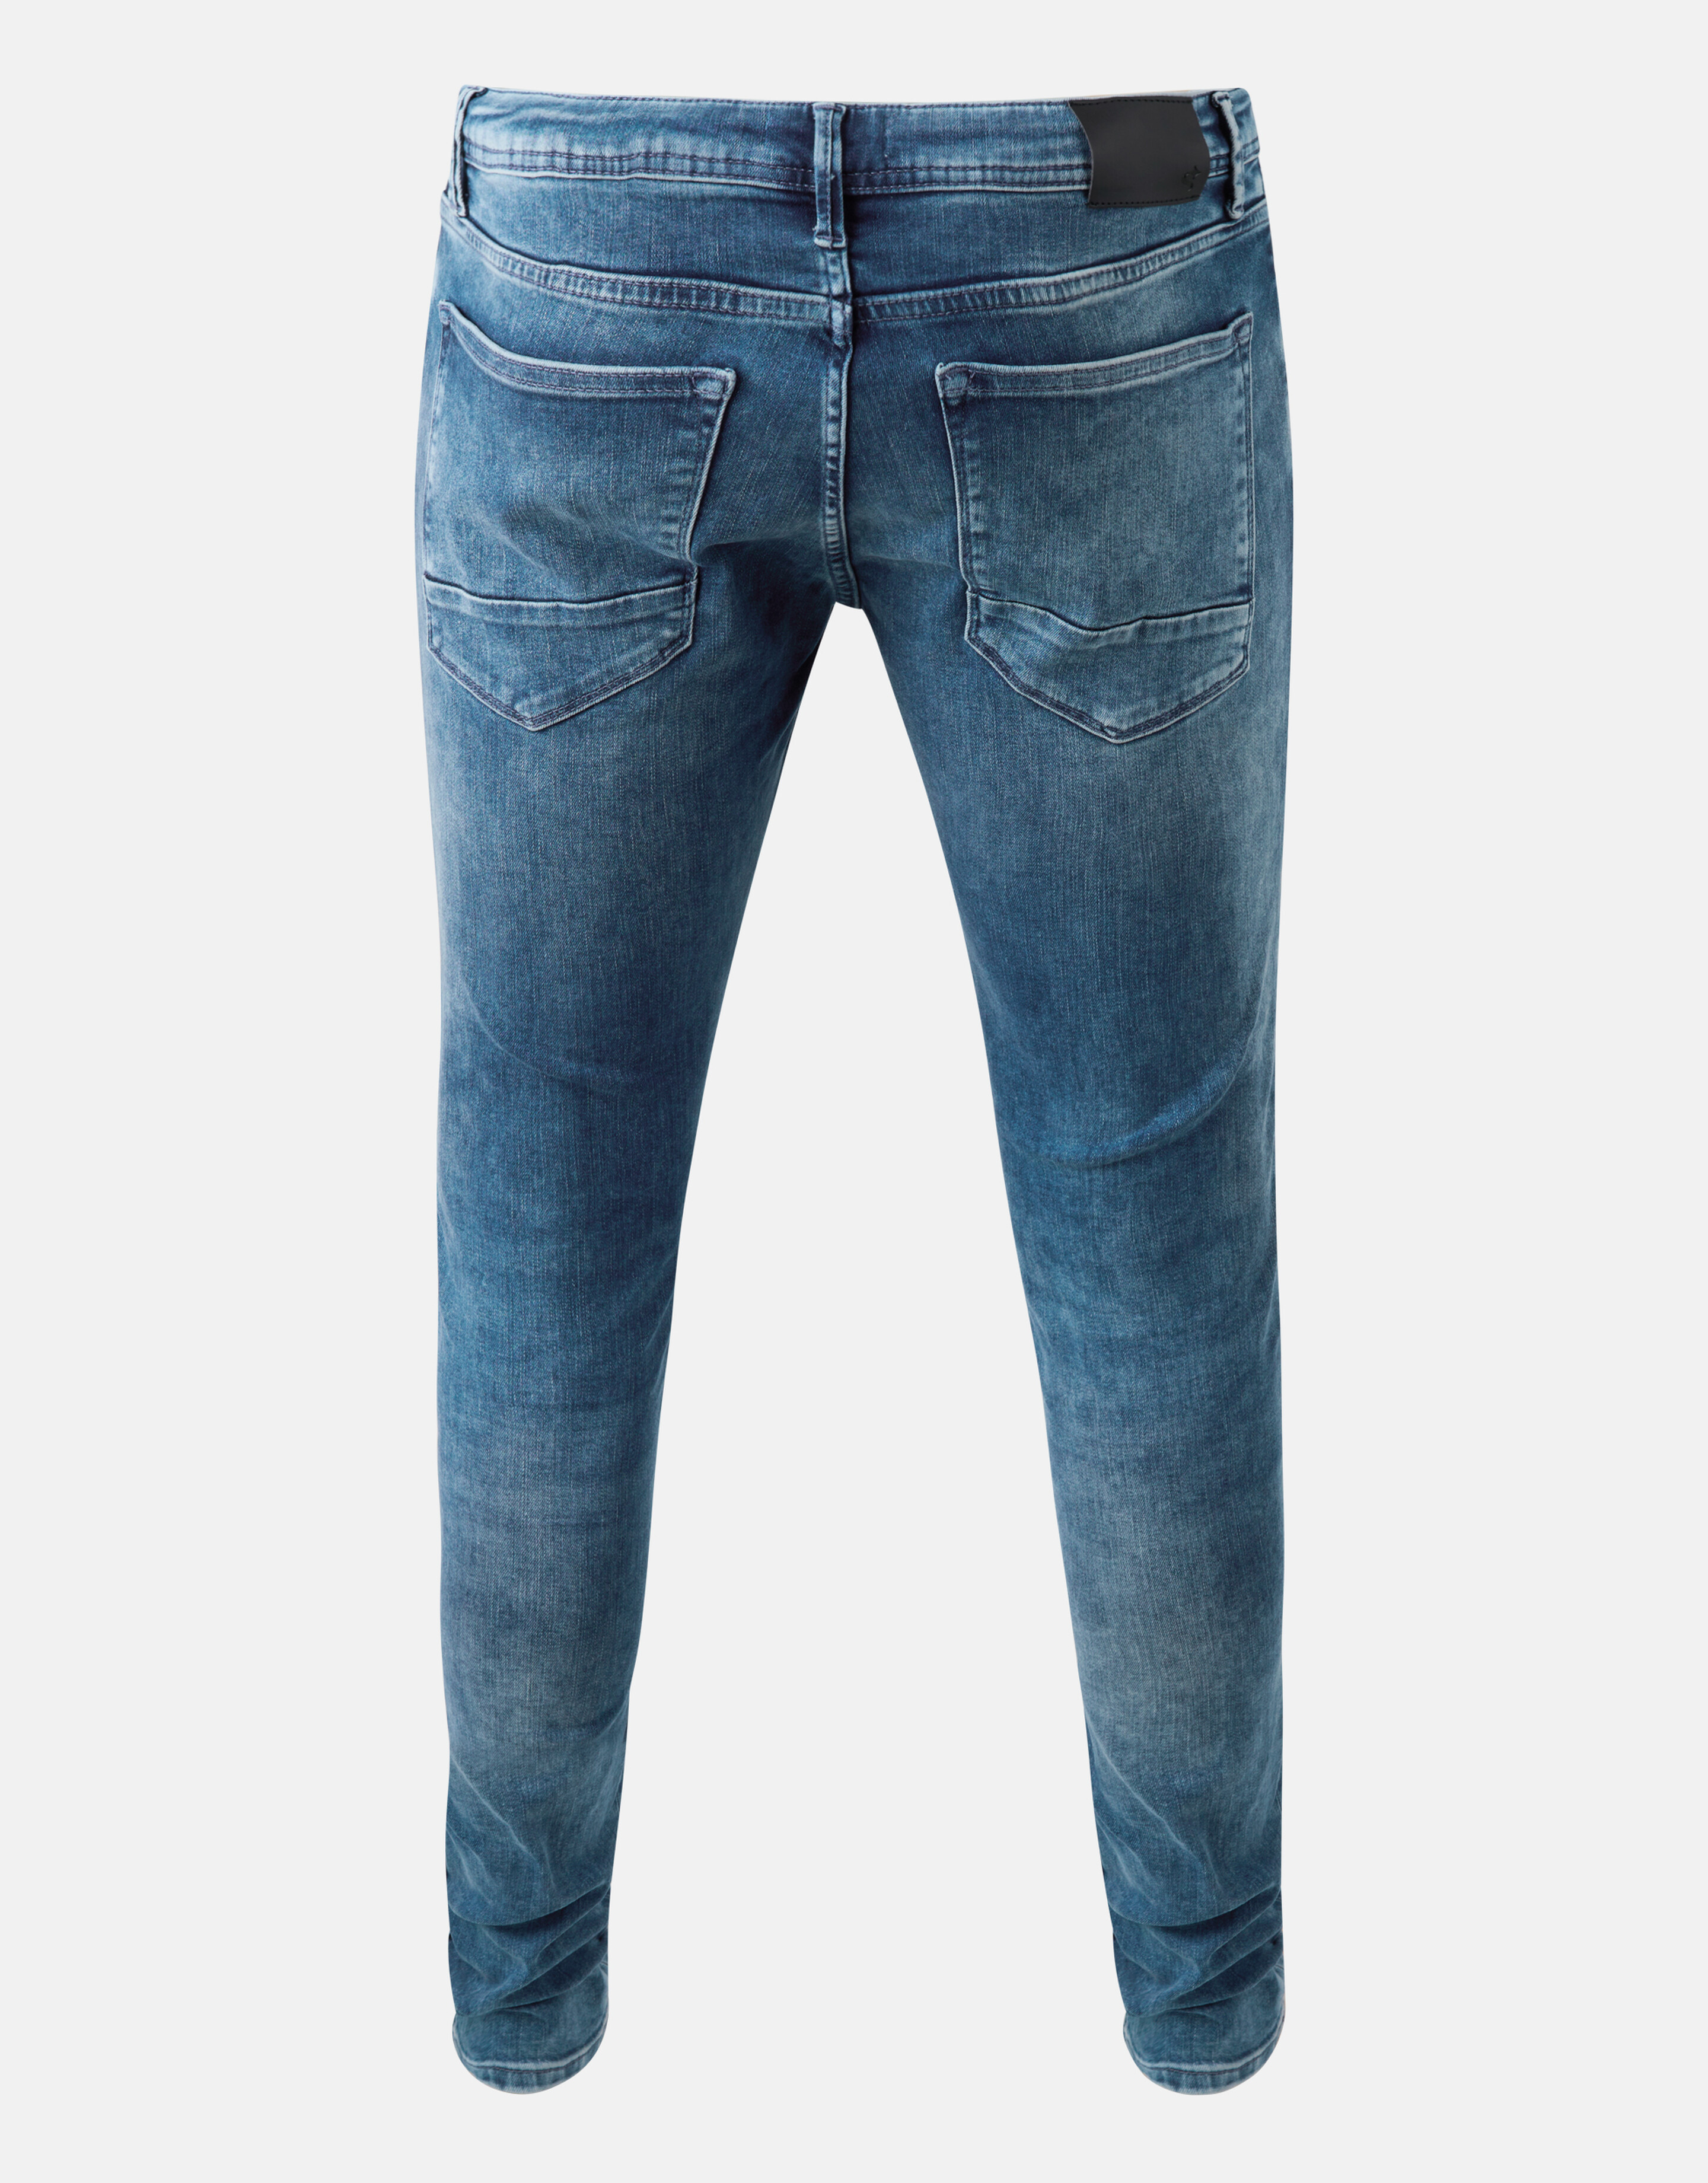 Skinny Jeans Mediumstone L32 Refill